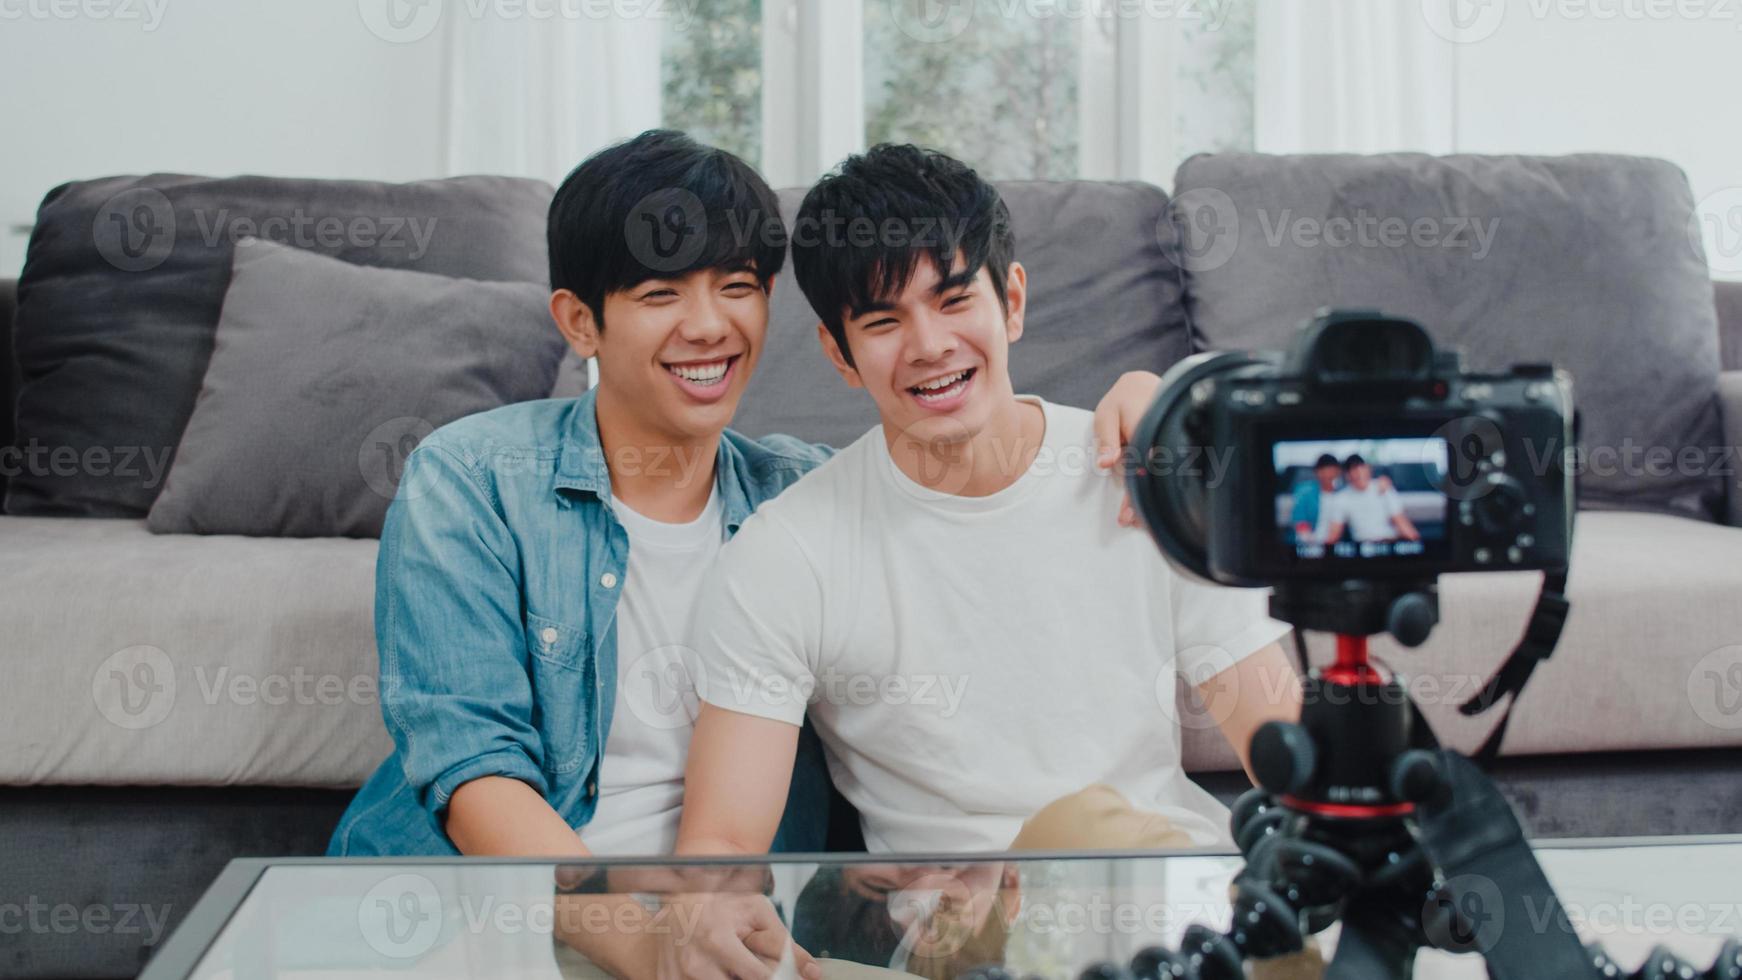 jeune couple gay asiatique couple d'influenceurs vlog à la maison. les adolescents coréens lgbtq heureux se détendent en s'amusant à l'aide de l'enregistrement de la caméra vlog vidéo upload dans les médias sociaux tout en étant allongé sur le canapé dans le salon au concept de maison. photo